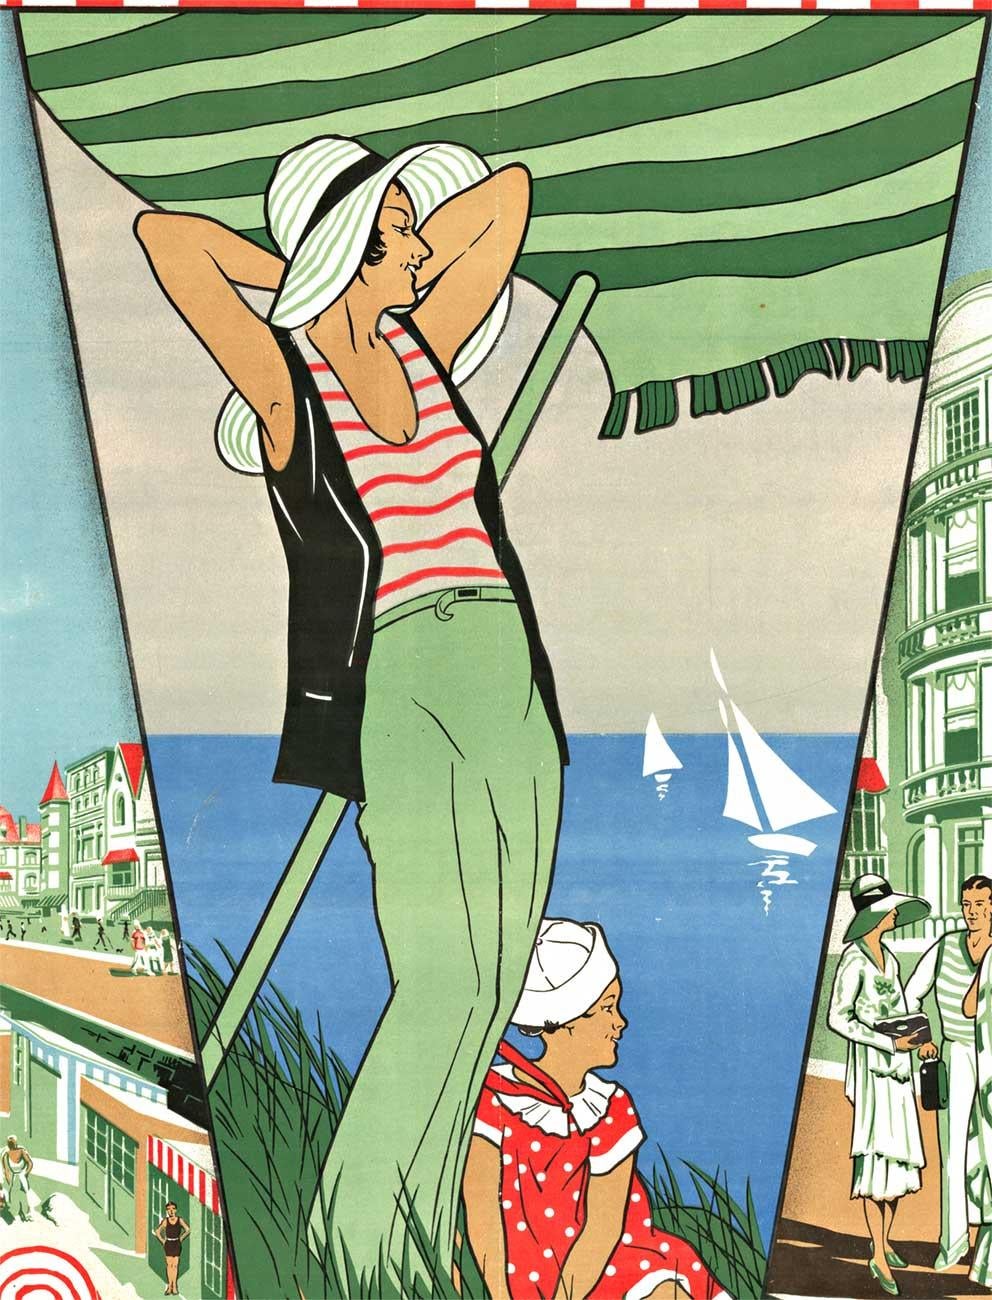 Vintage Art of Vintage La Panne de 1932. Une chromolithographie avec l'ajout d'une encre argentée rend cette affiche de plage belge originale très attrayante !
Des personnes à la mode sont représentées sur la promenade de la plage, tandis que